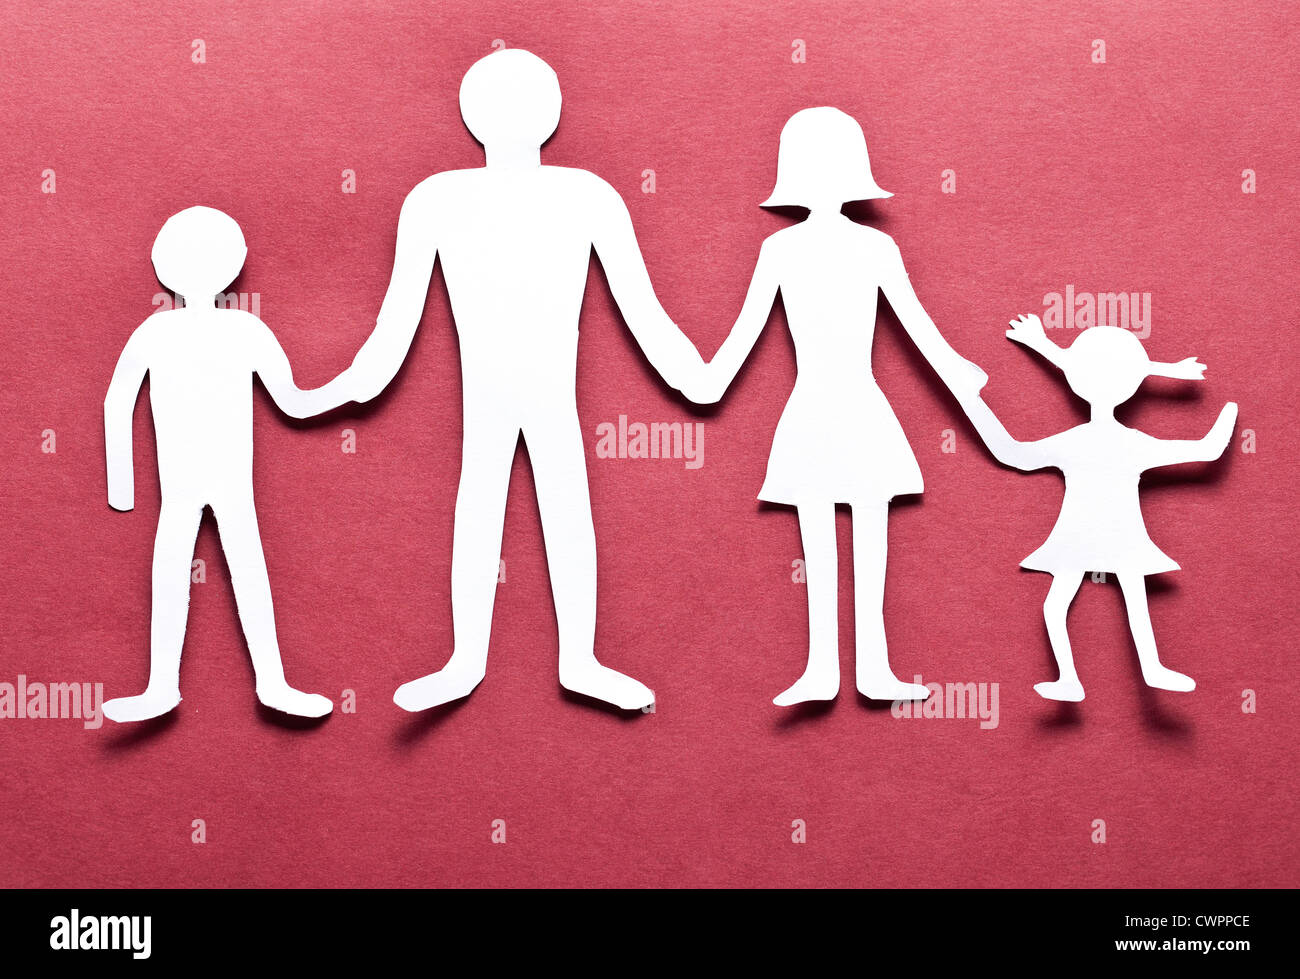 Pappfiguren der Familie auf einem roten Hintergrund. Das Symbol der Einheit und des Glücks. Stockfoto